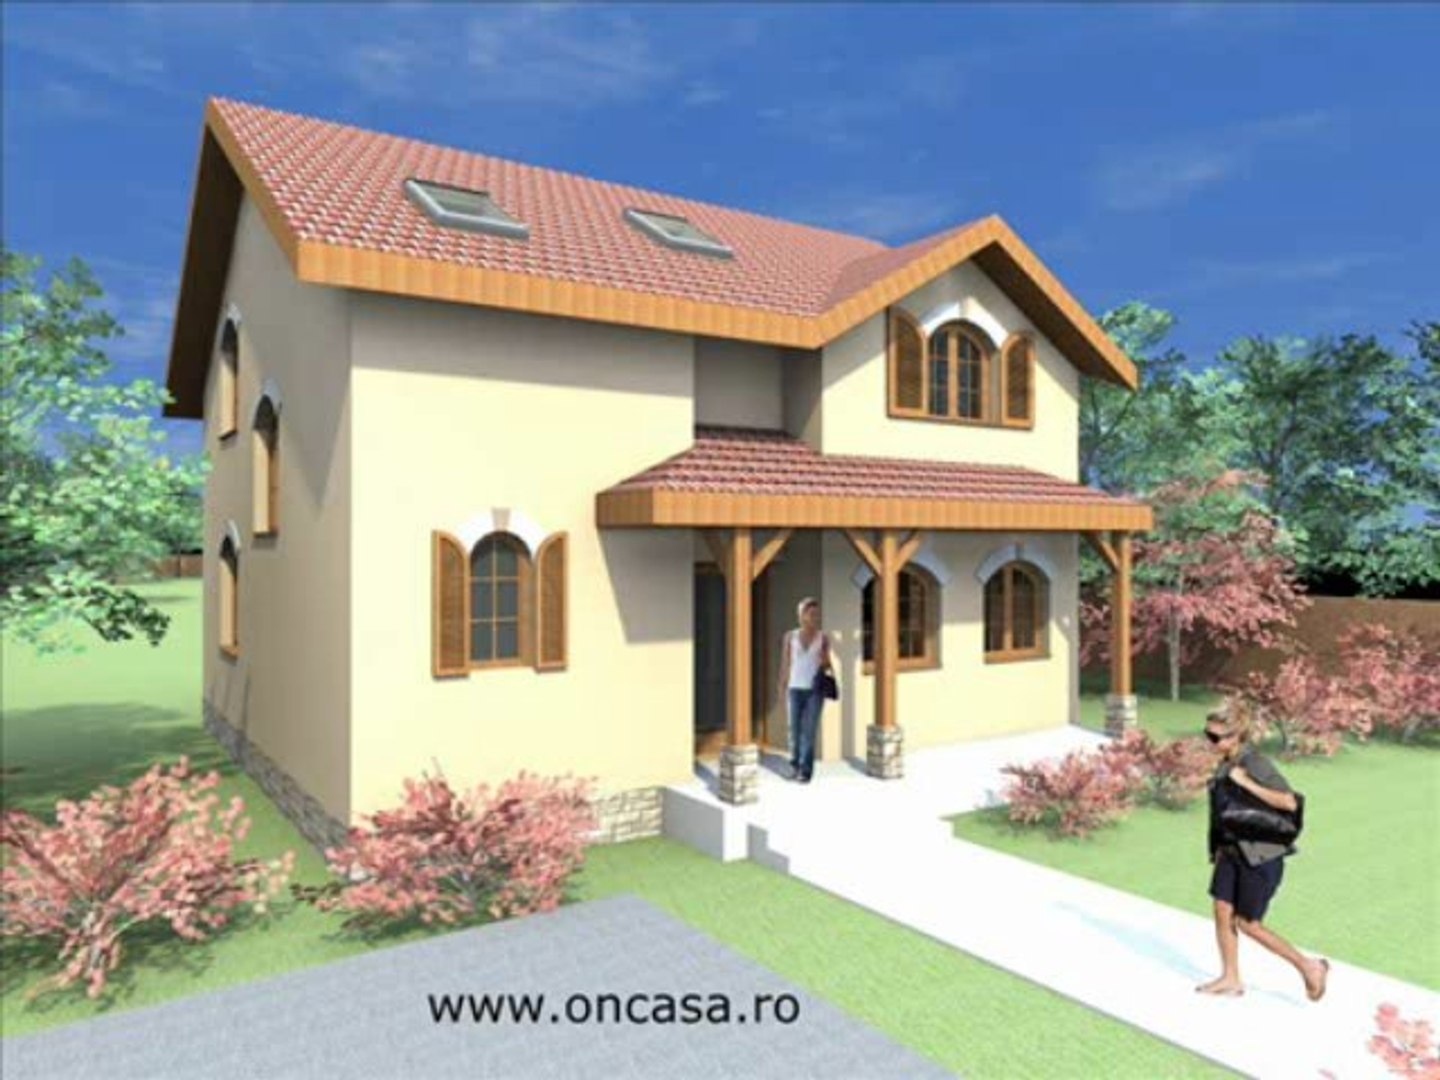 http://oncasa.ro/ Proiecte case, planuri case, modele case, proiecte case  mici, proiecte case lemn, case cu etaj, proiecte case mansarda,planuri  parter duplex, Proiecte case, Planuri case, proiecte de casa, proiecte de  case, modele casa, proiecte case mic ...